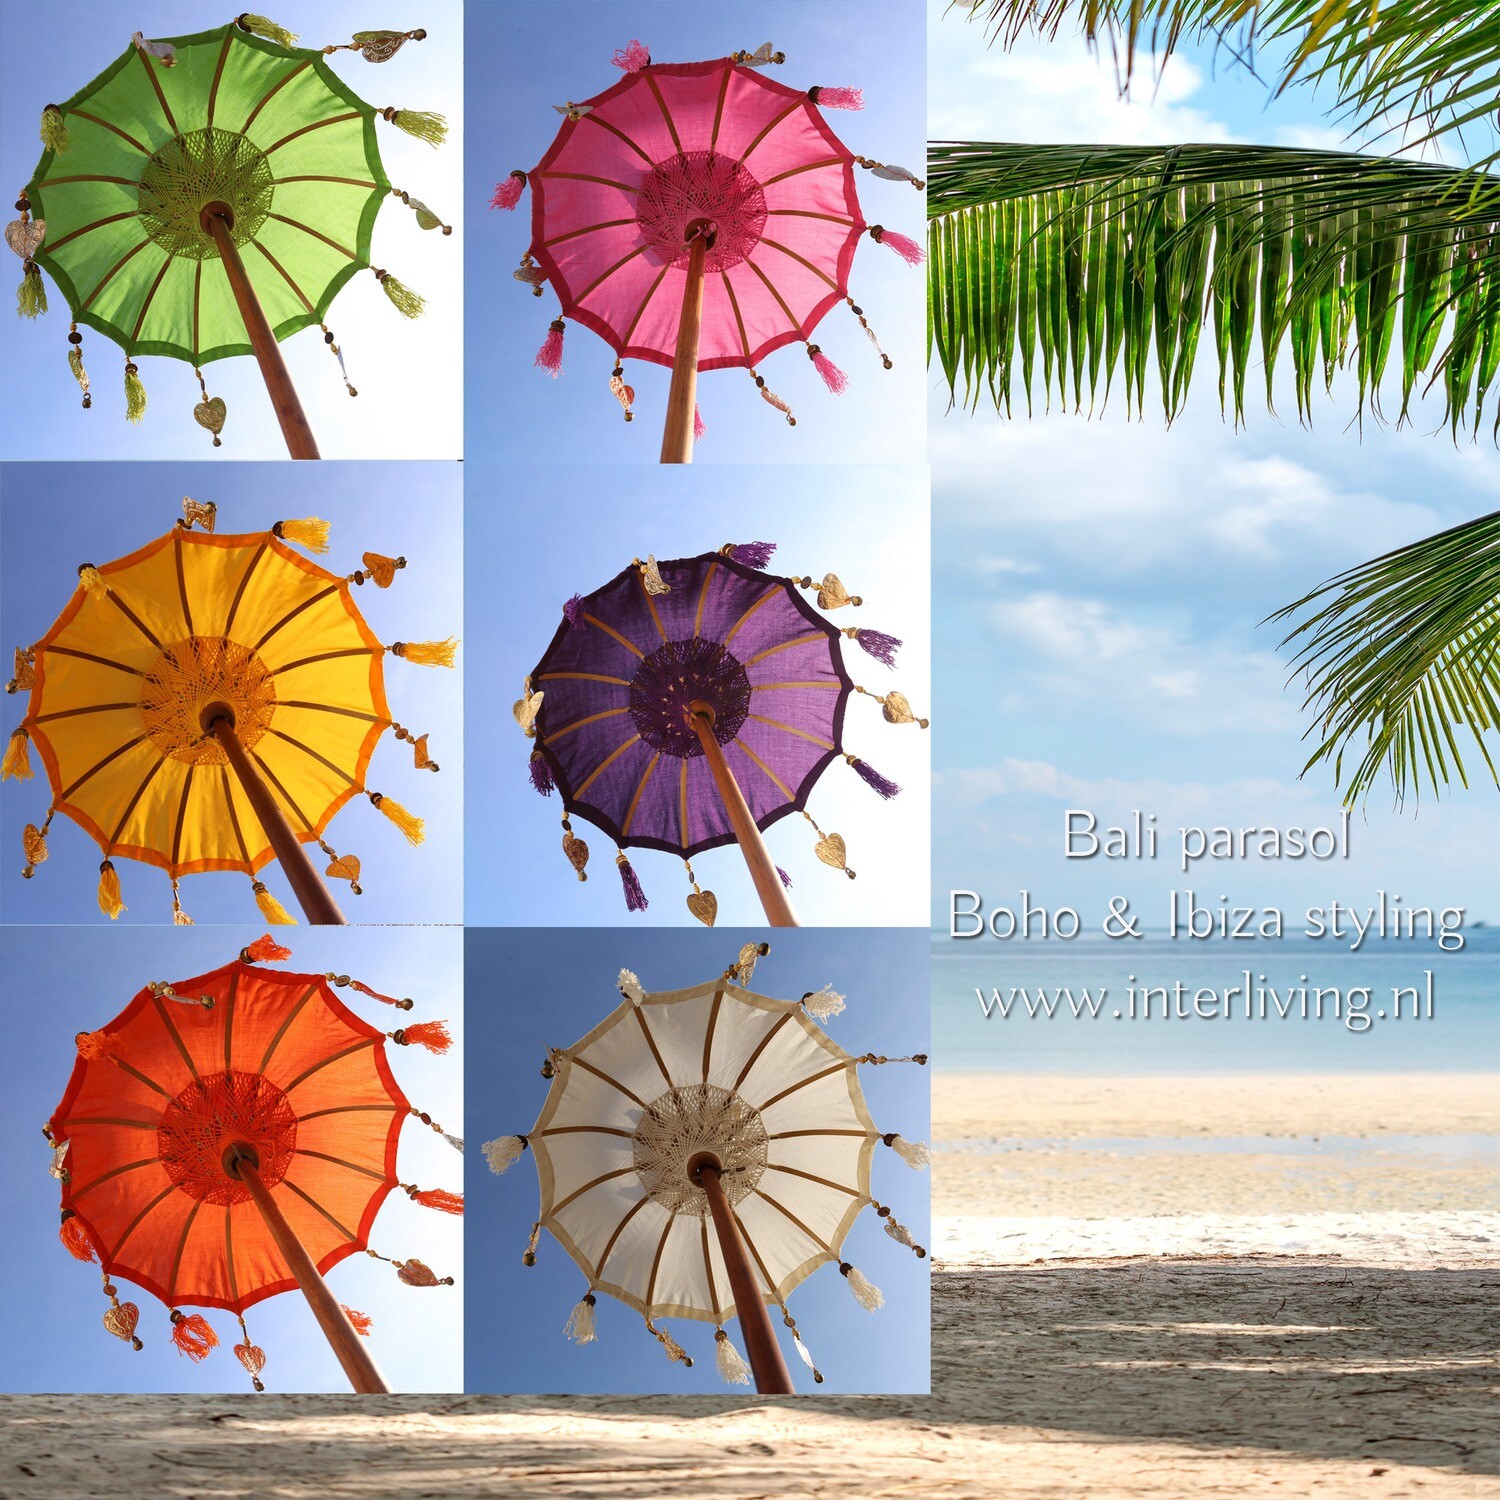 navigatie versus onszelf tafelparasol uit Bali 50 cm - Tedung - versierde kleine Balinese parasols  met kwastjes en hangers in de kleuren wit / geel / groen / roze / paars en  oranje - handgemaakt met teakhout voet